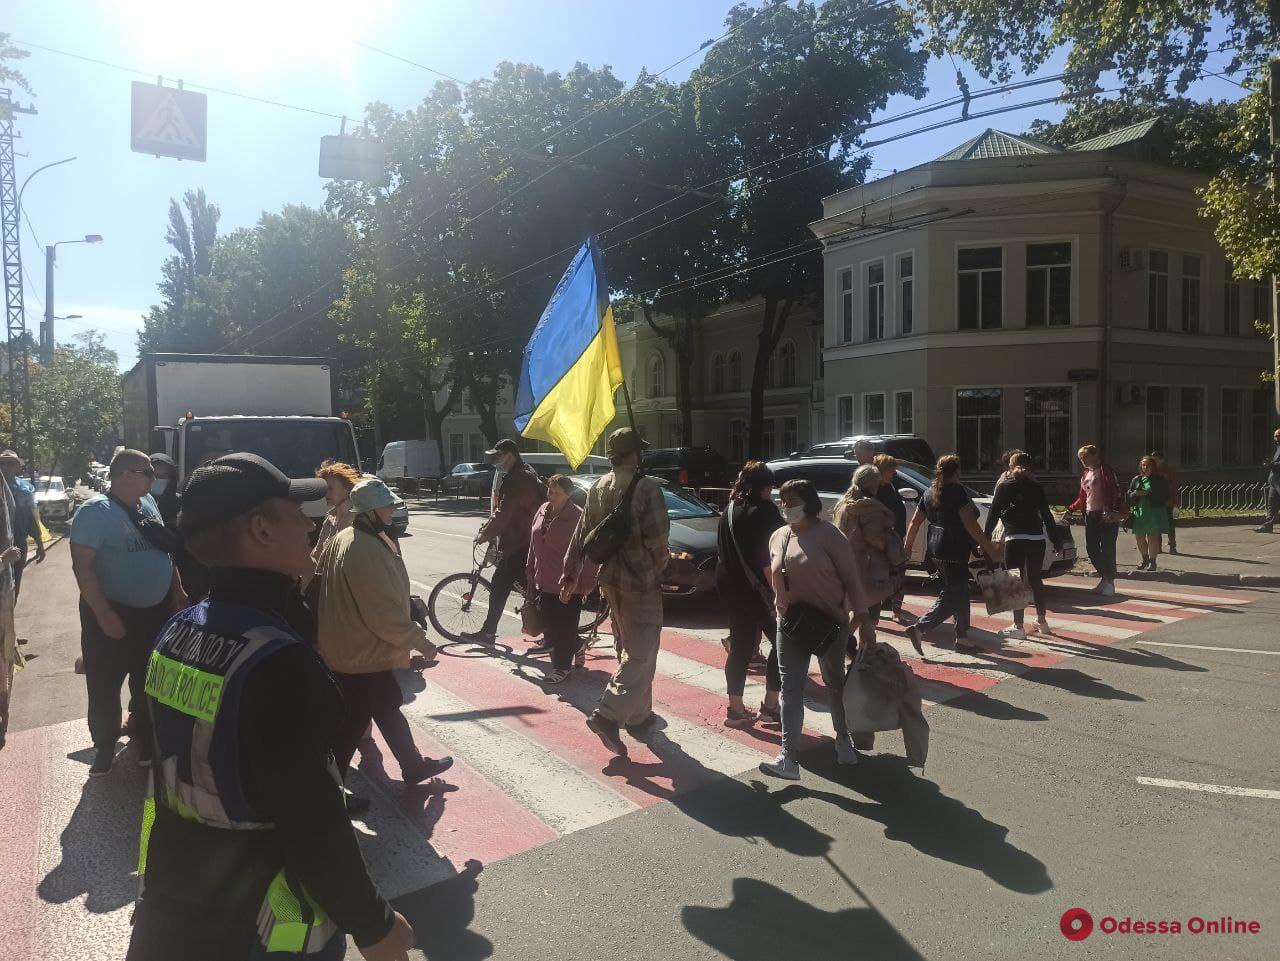 Требовали включить свет и перекрыли дорогу: переселенцы с Донбасса устроили пикет возле ОГА (фото)